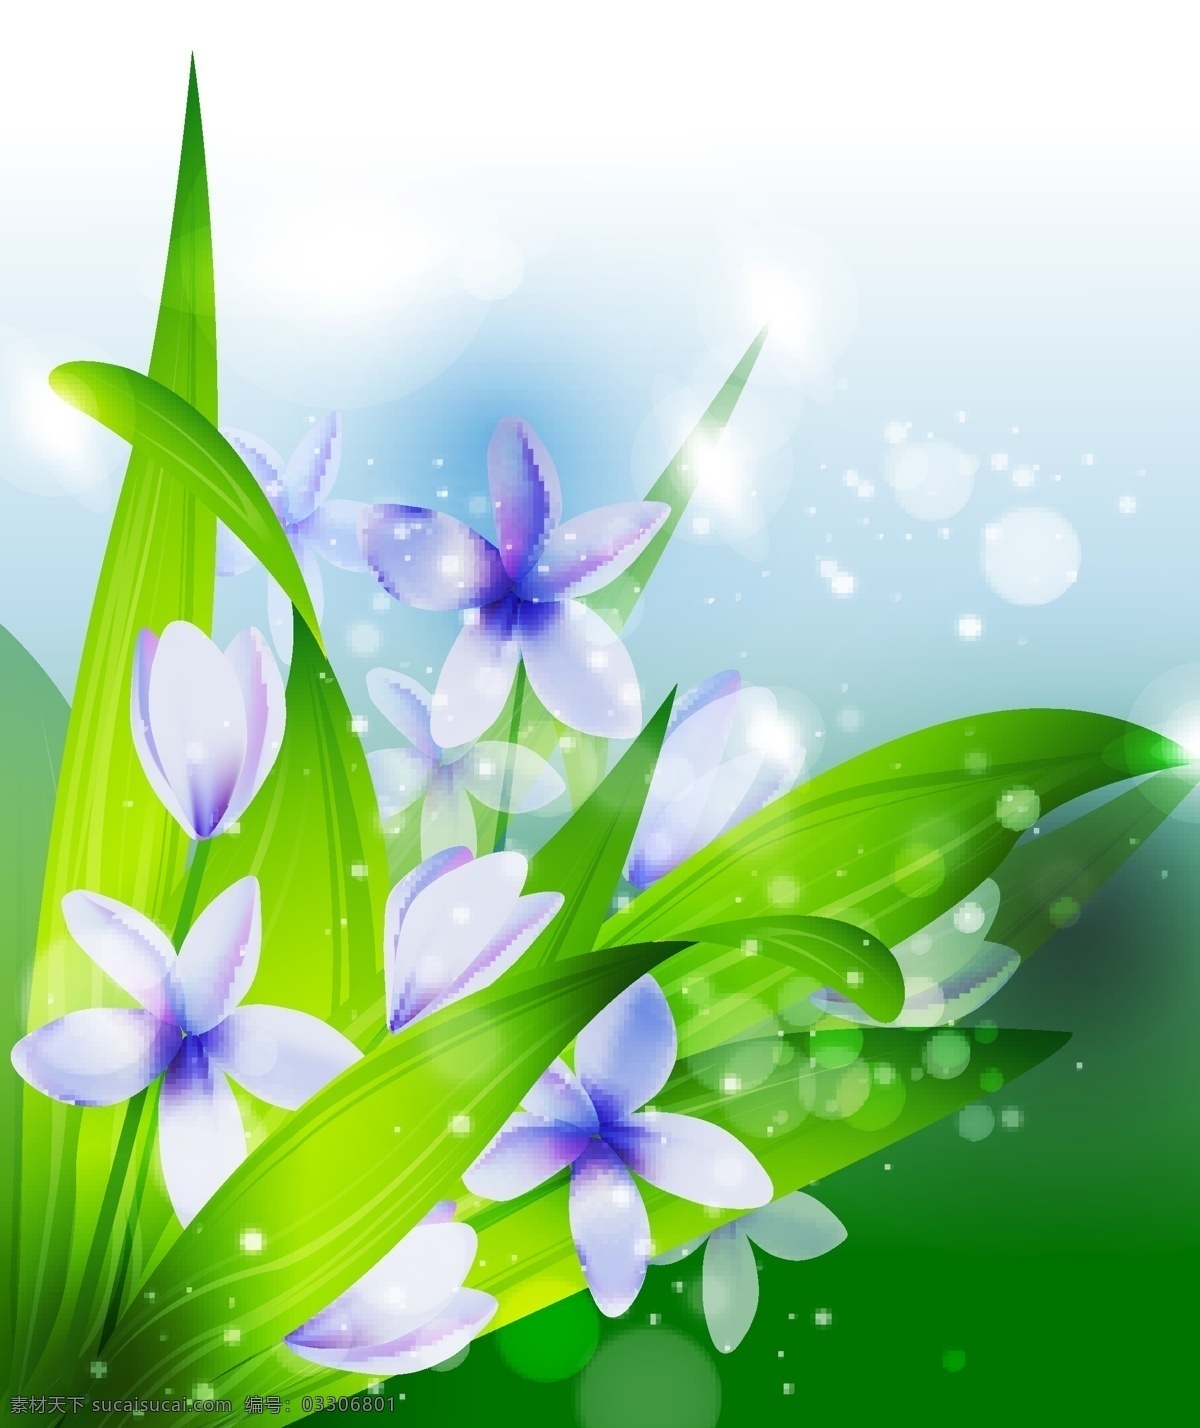 植物 背景 矢量 矢量图 春色 春天 春意 花朵 绿叶 梦幻 素材图片 其他矢量图